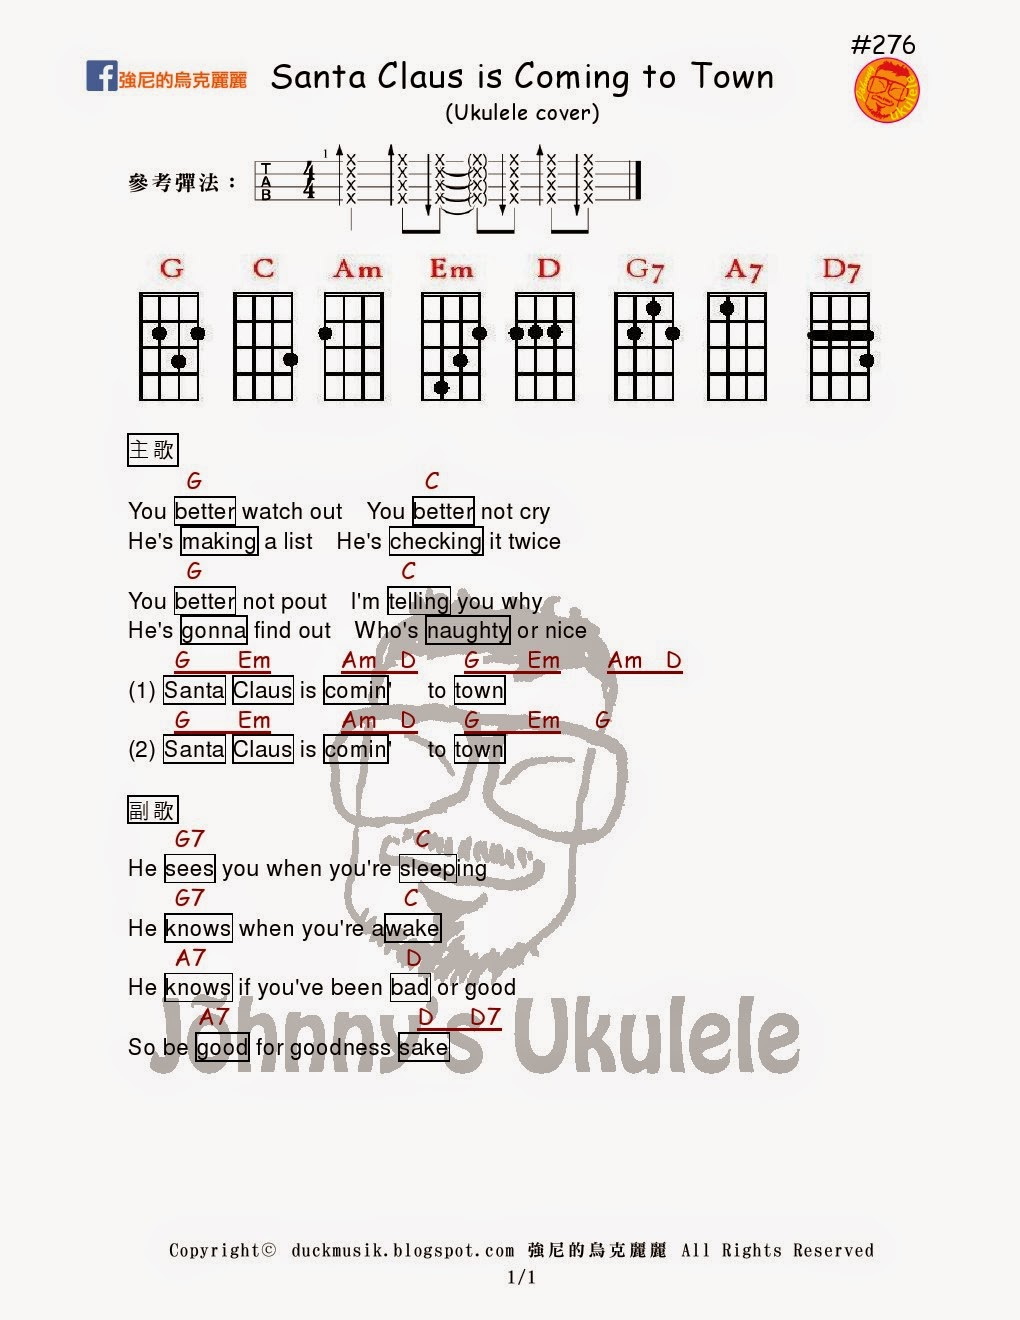 強尼的烏克麗麗Johnny Ukulele音樂教室: #276 Santa Claus is Coming to Town 強尼的烏克麗麗譜Johnny's Ukulele